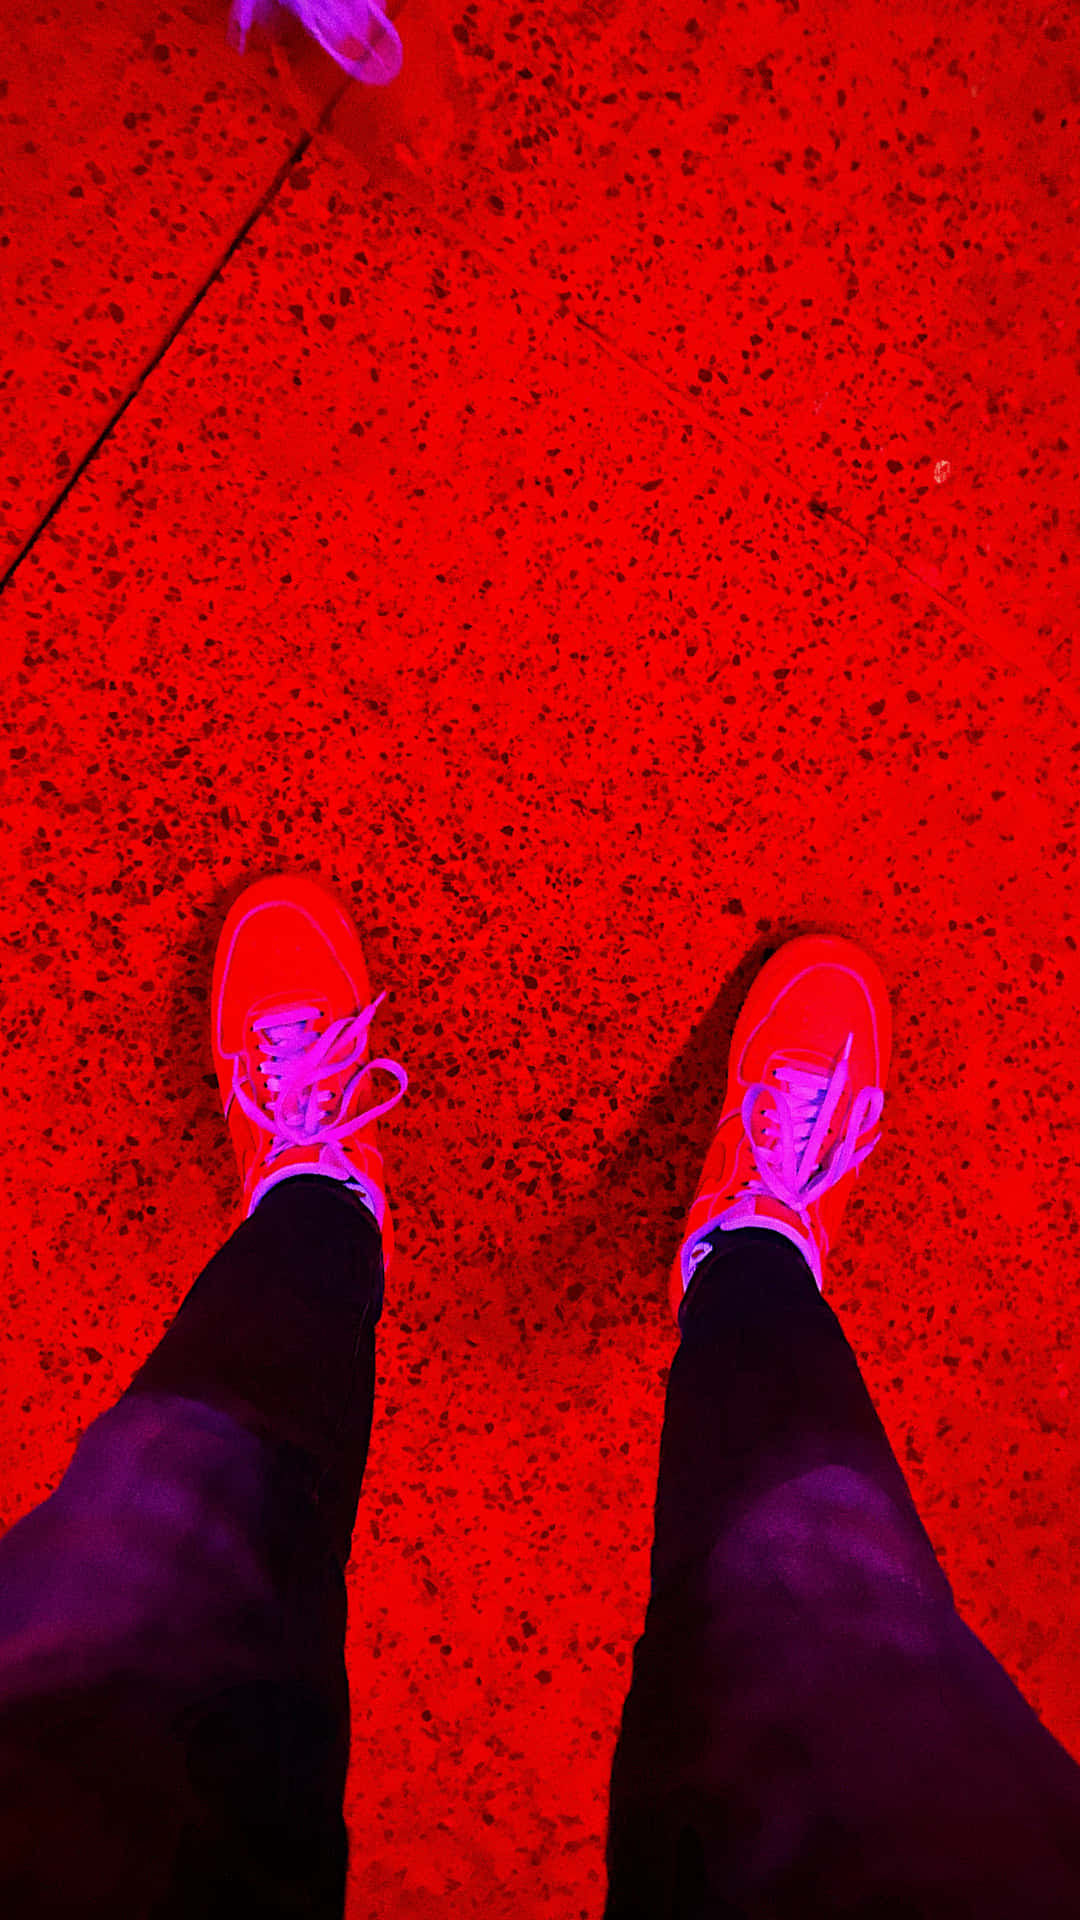 Imagenestética De Un Par De Zapatos Rojos.